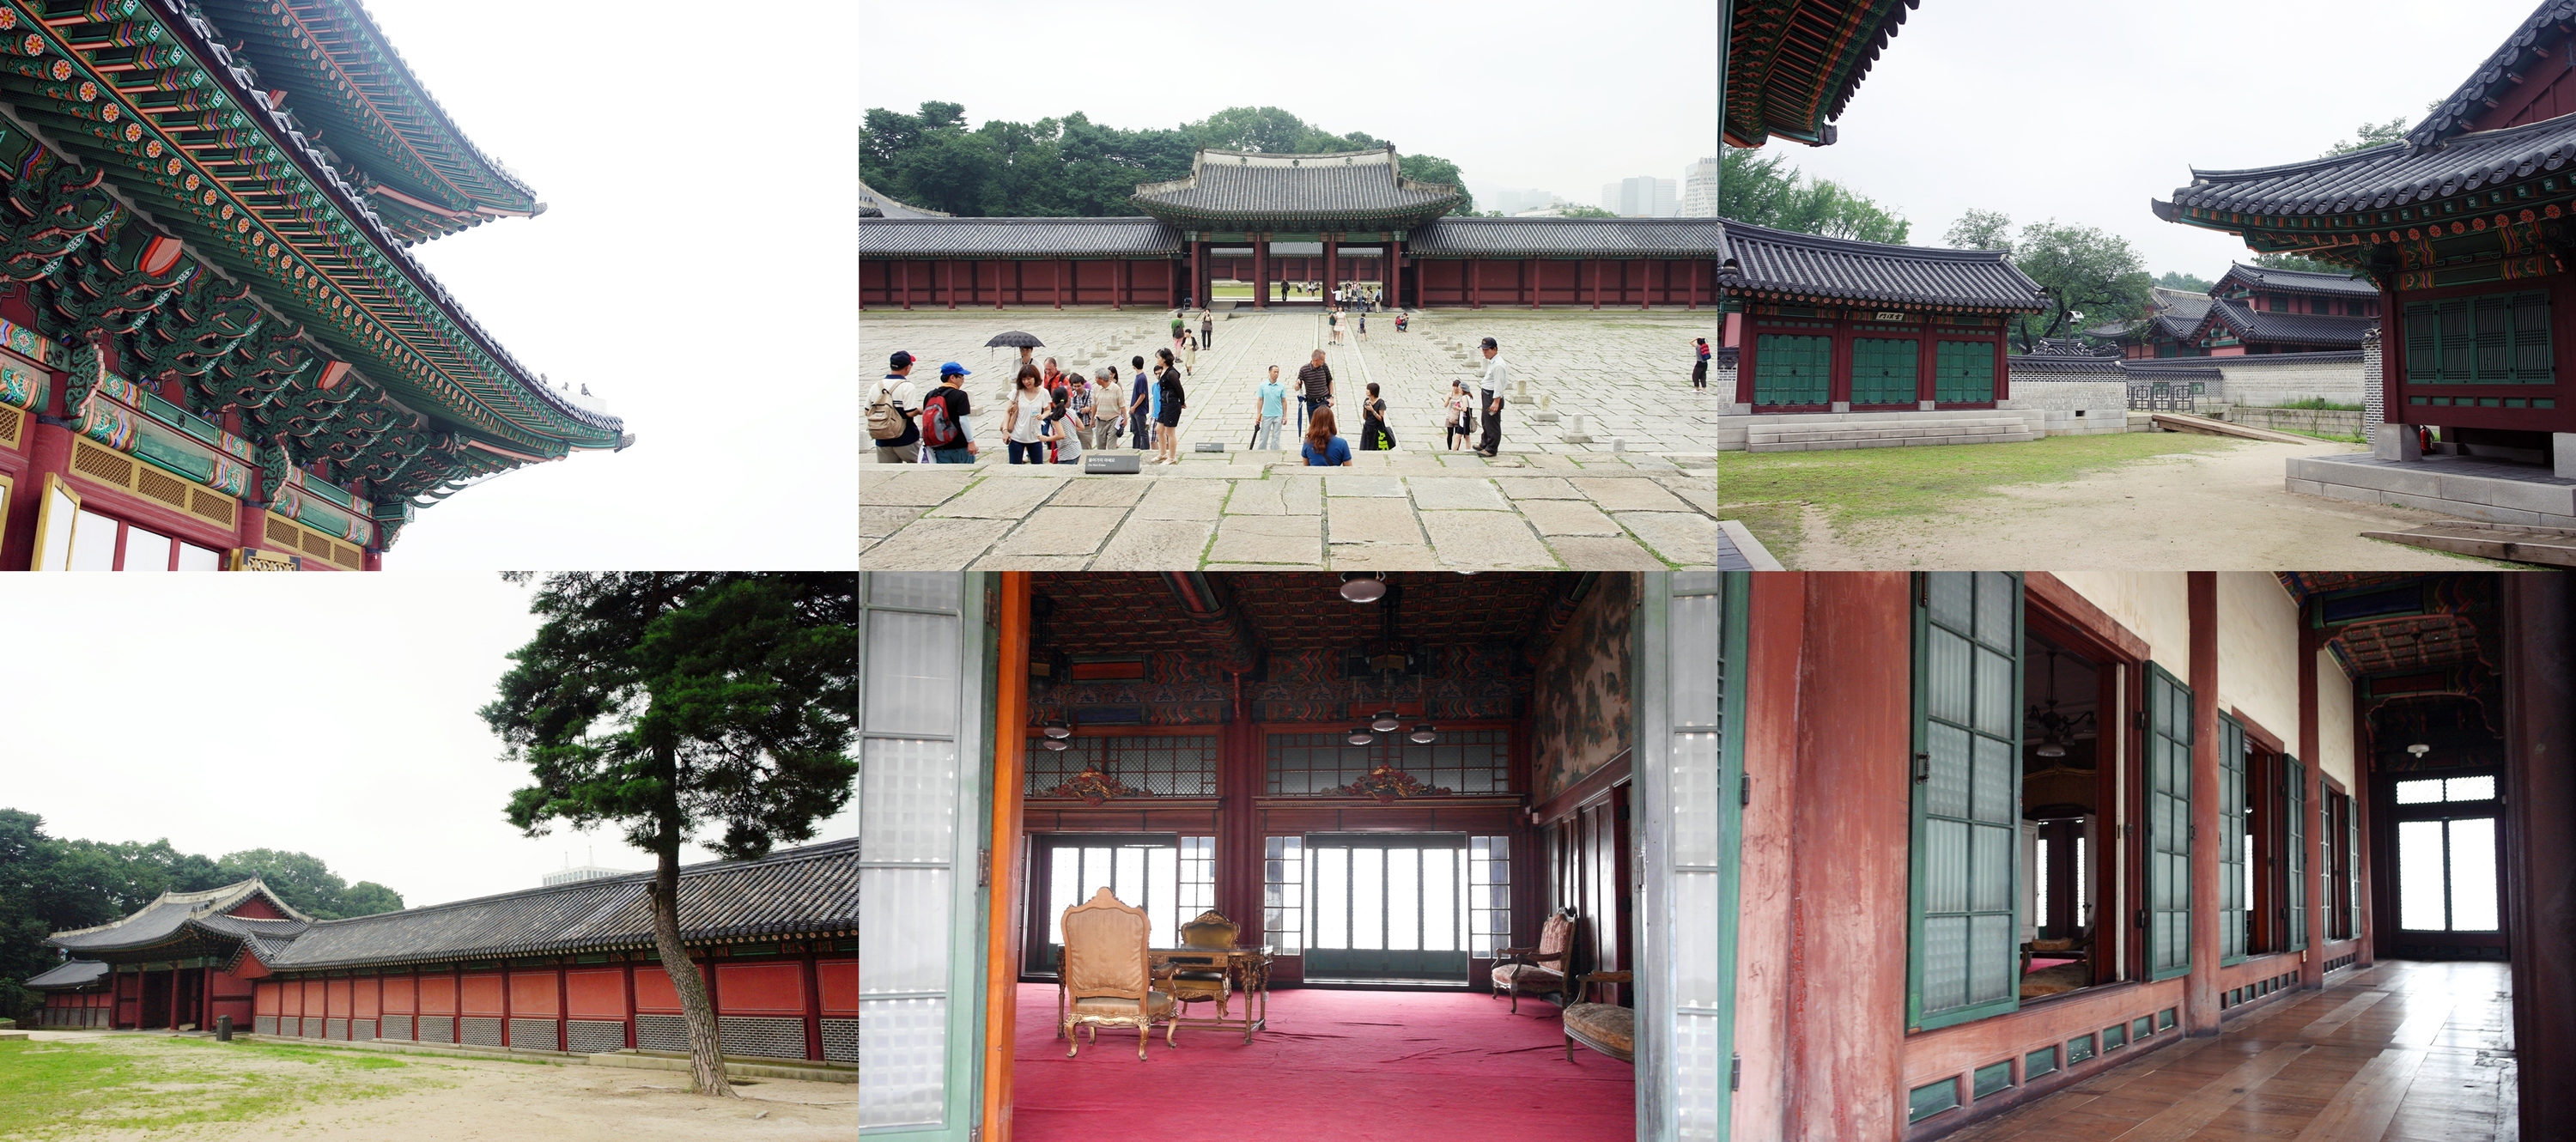 산자락을 따라 건물들을 골짜기에 안기도록 배치해 한국 궁궐 건축의 비정형적 조형미를 대표한다는 평가를 받는 창덕궁